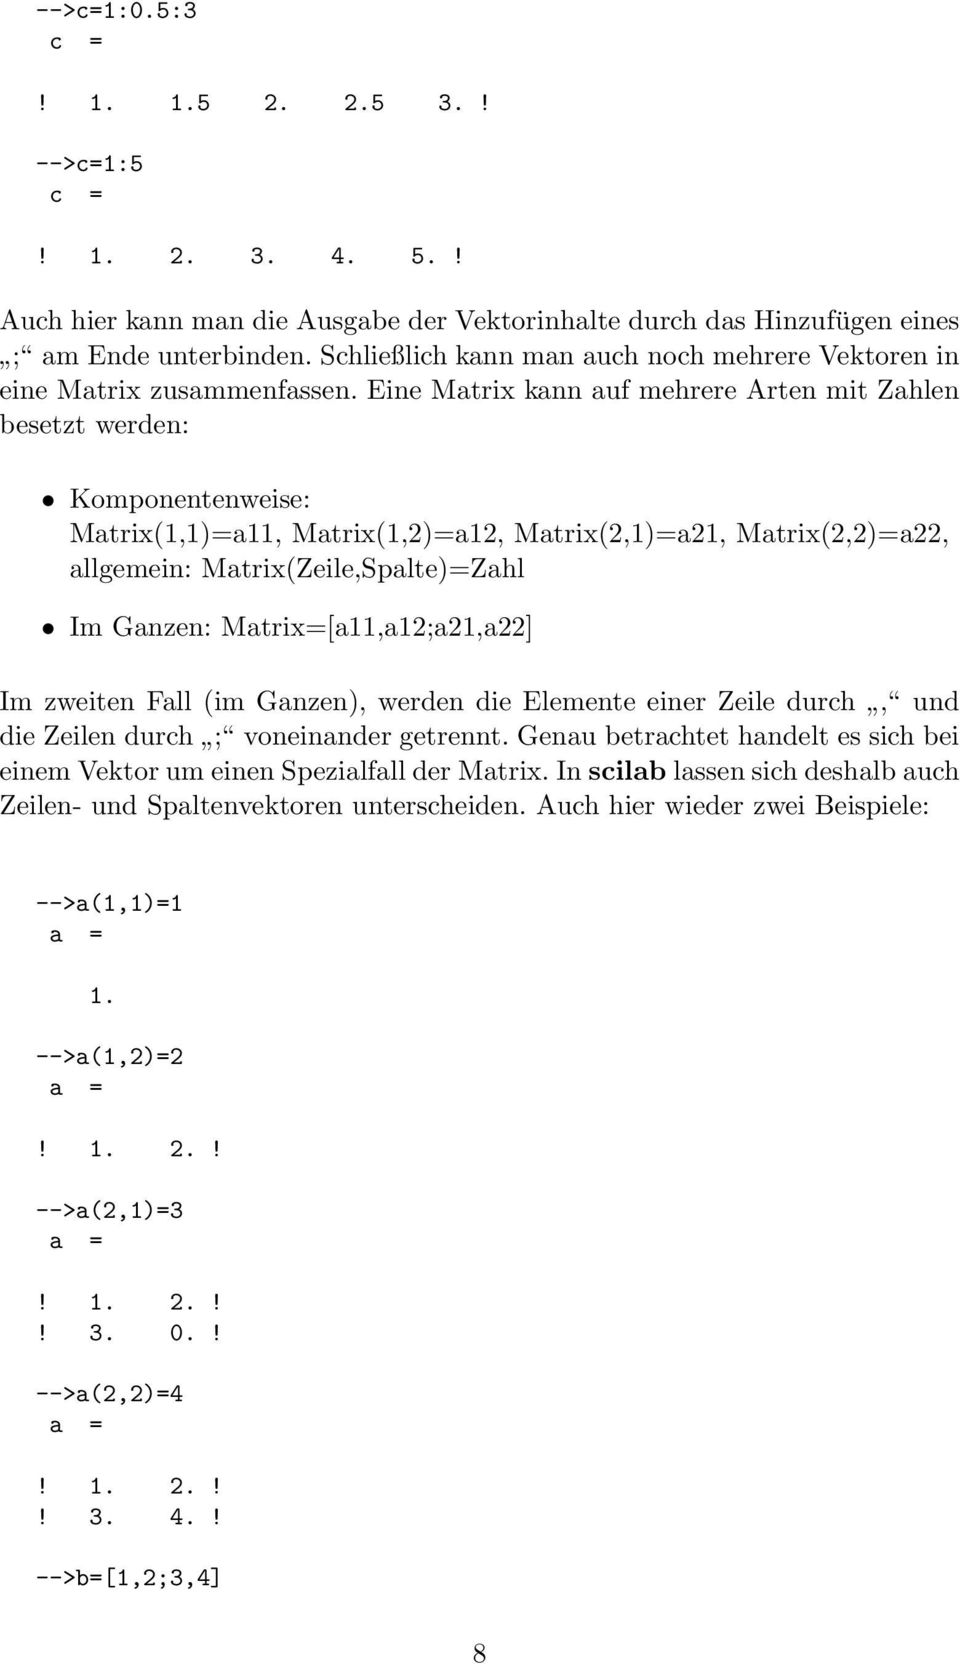 Eine Matrix kann auf mehrere Arten mit Zahlen besetzt werden: Komponentenweise: Matrix(1,1)=a11, Matrix(1,2)=a12, Matrix(2,1)=a21, Matrix(2,2)=a22, allgemein: Matrix(Zeile,Spalte)=Zahl Im Ganzen: